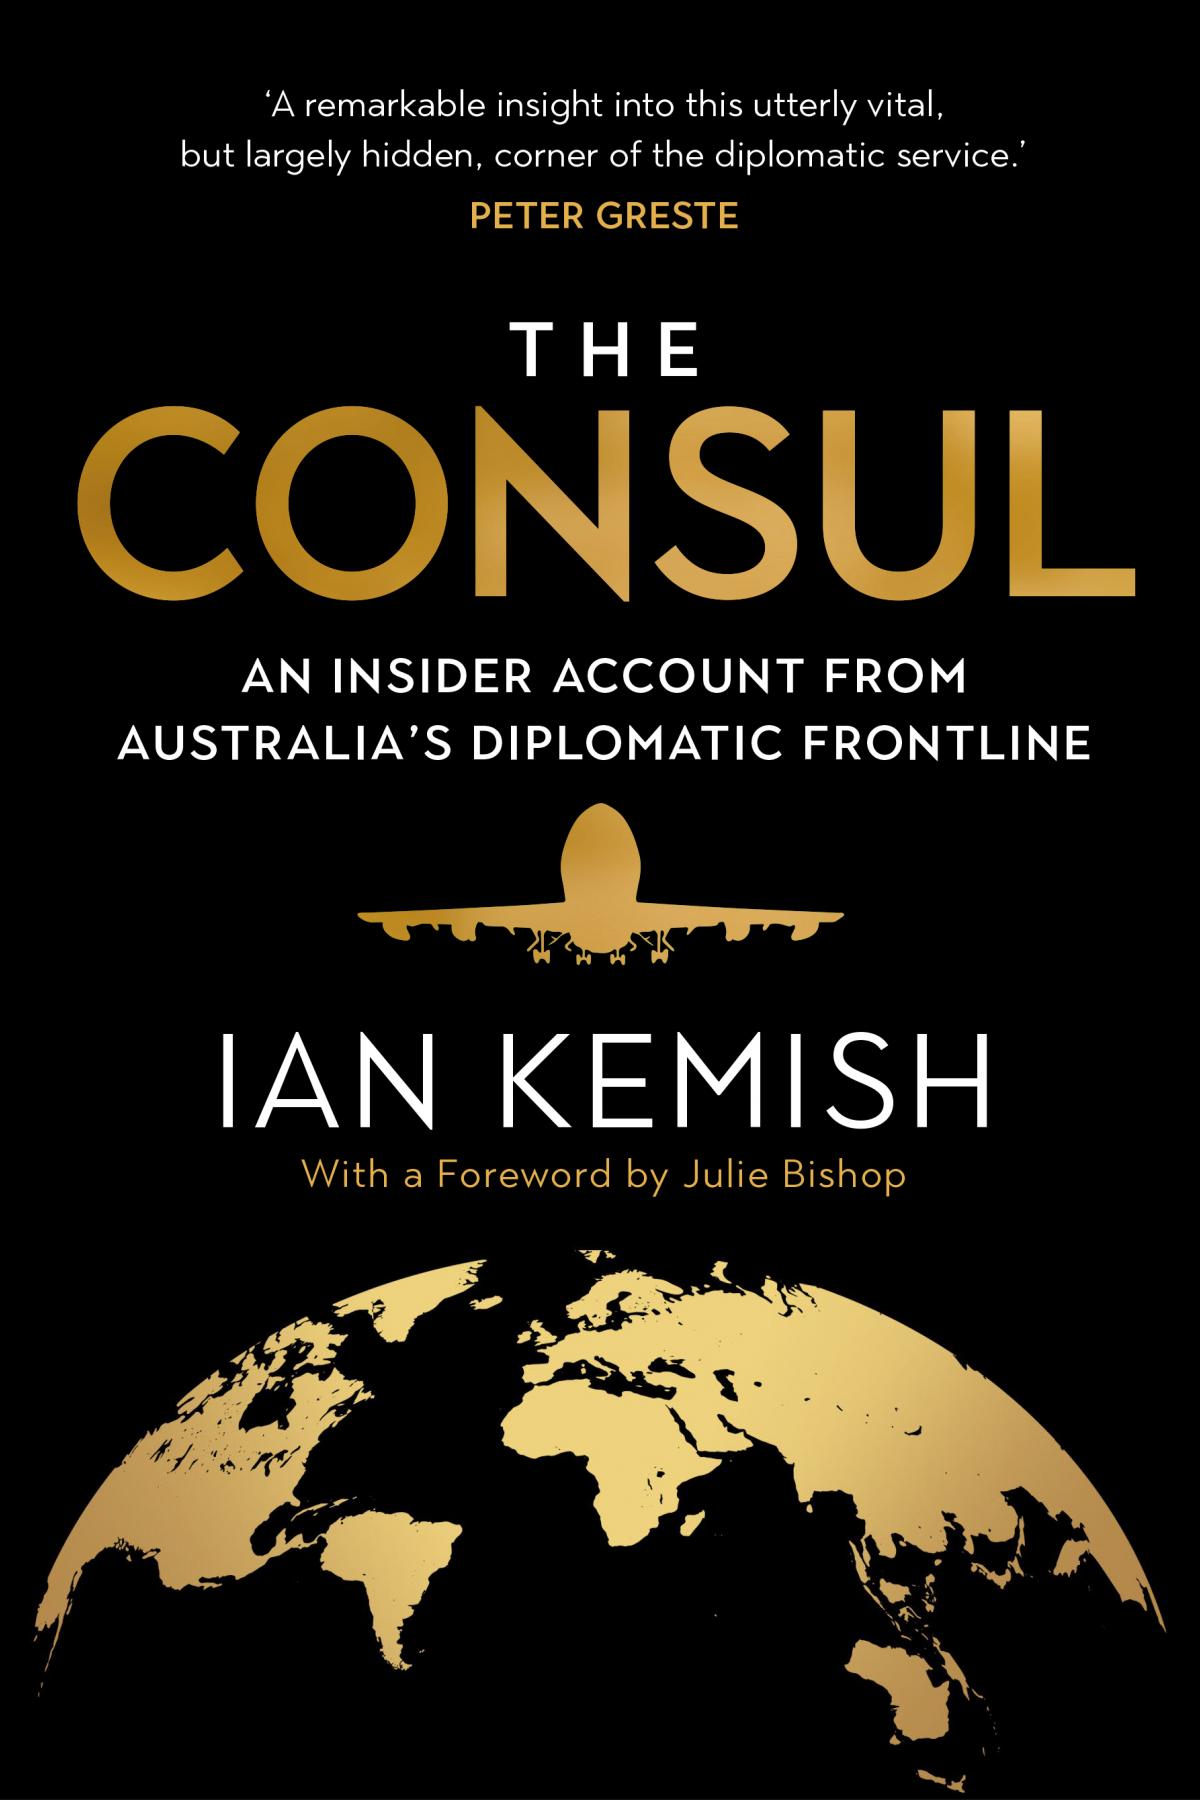 The Consul by Ian Kemish AM